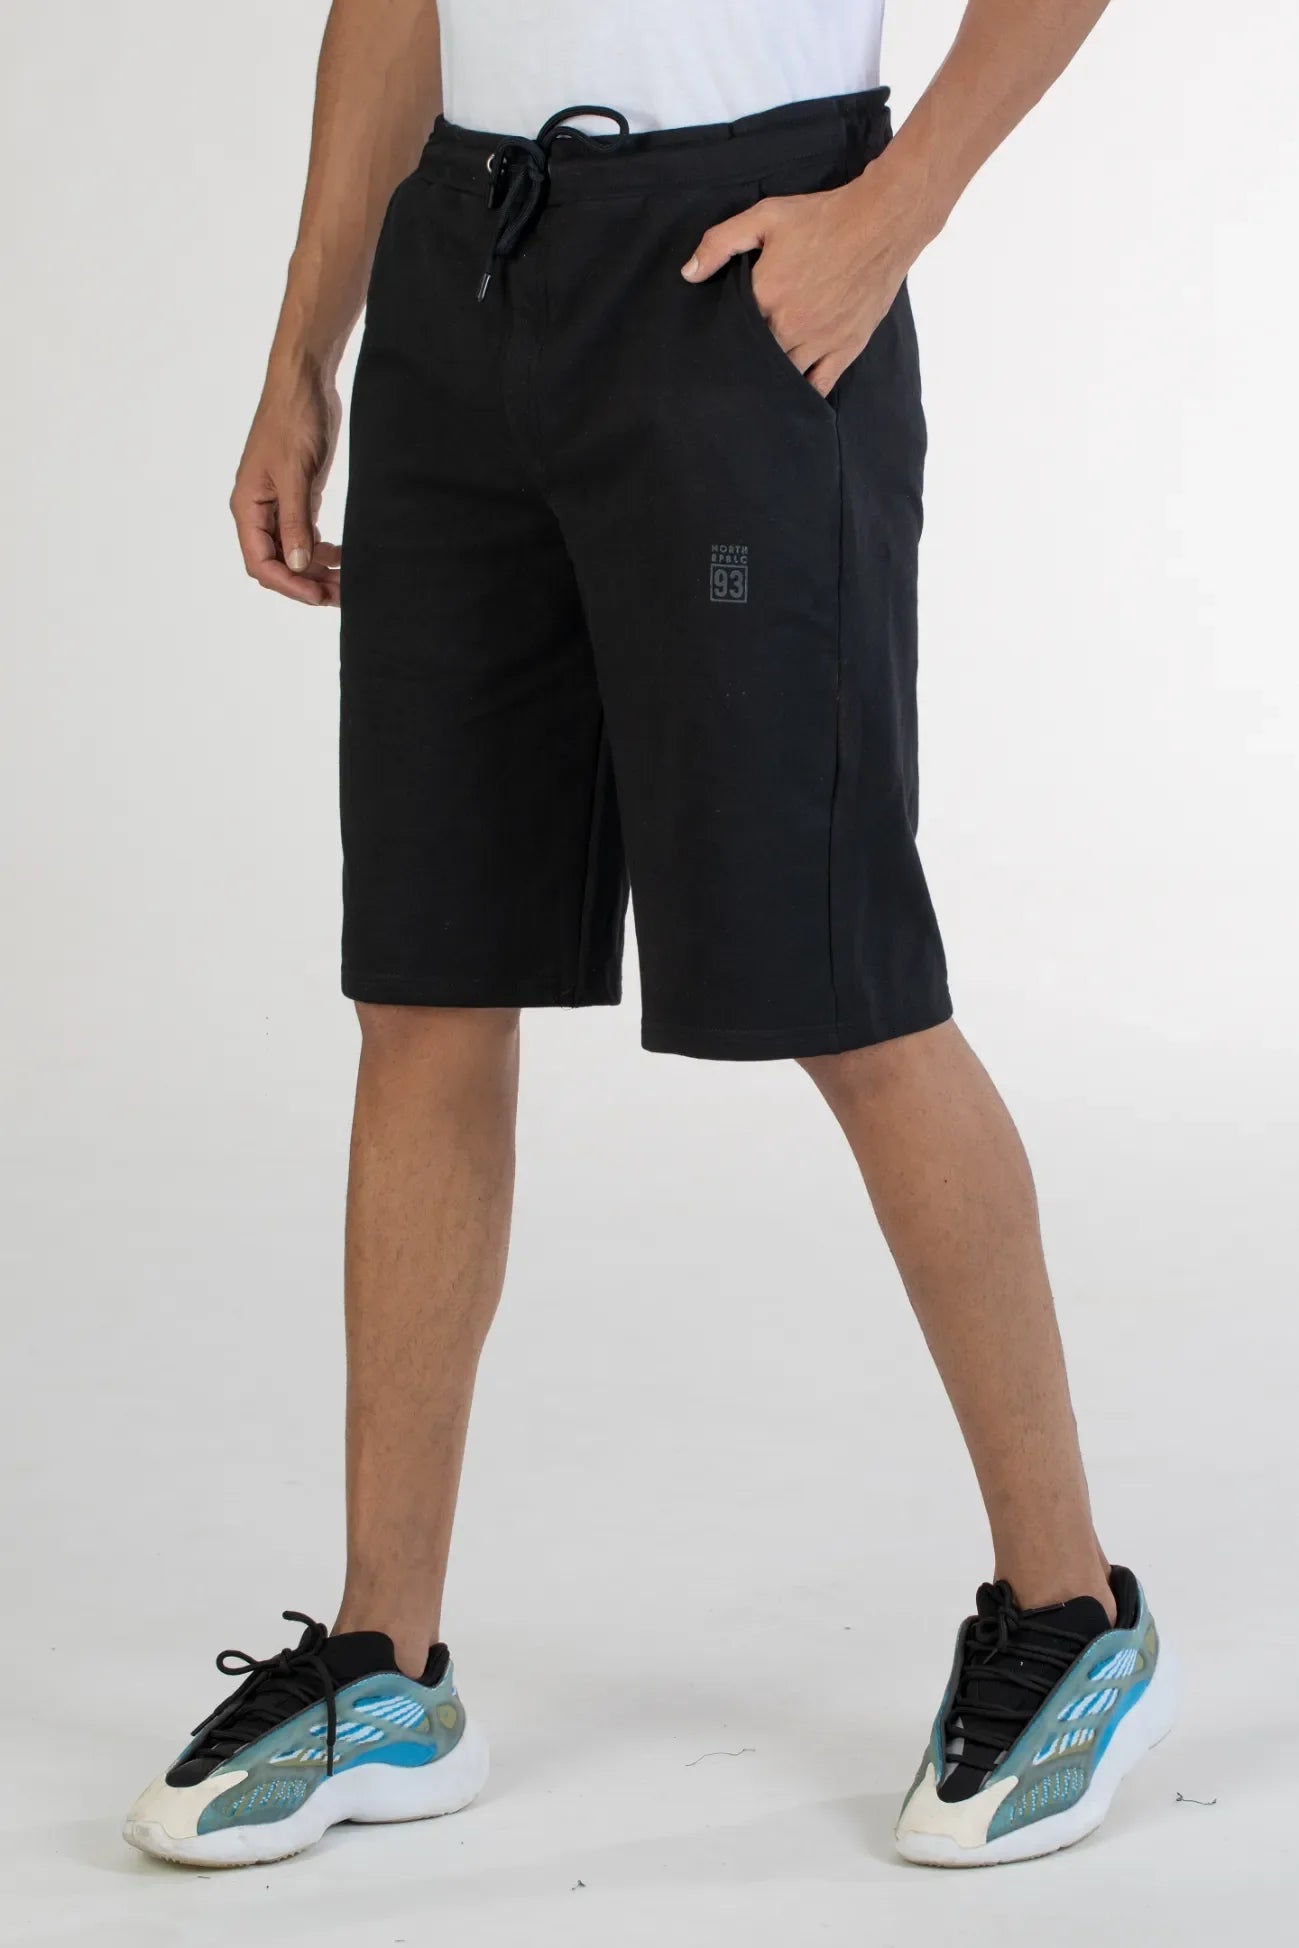 black solid knit cotton men's shorts